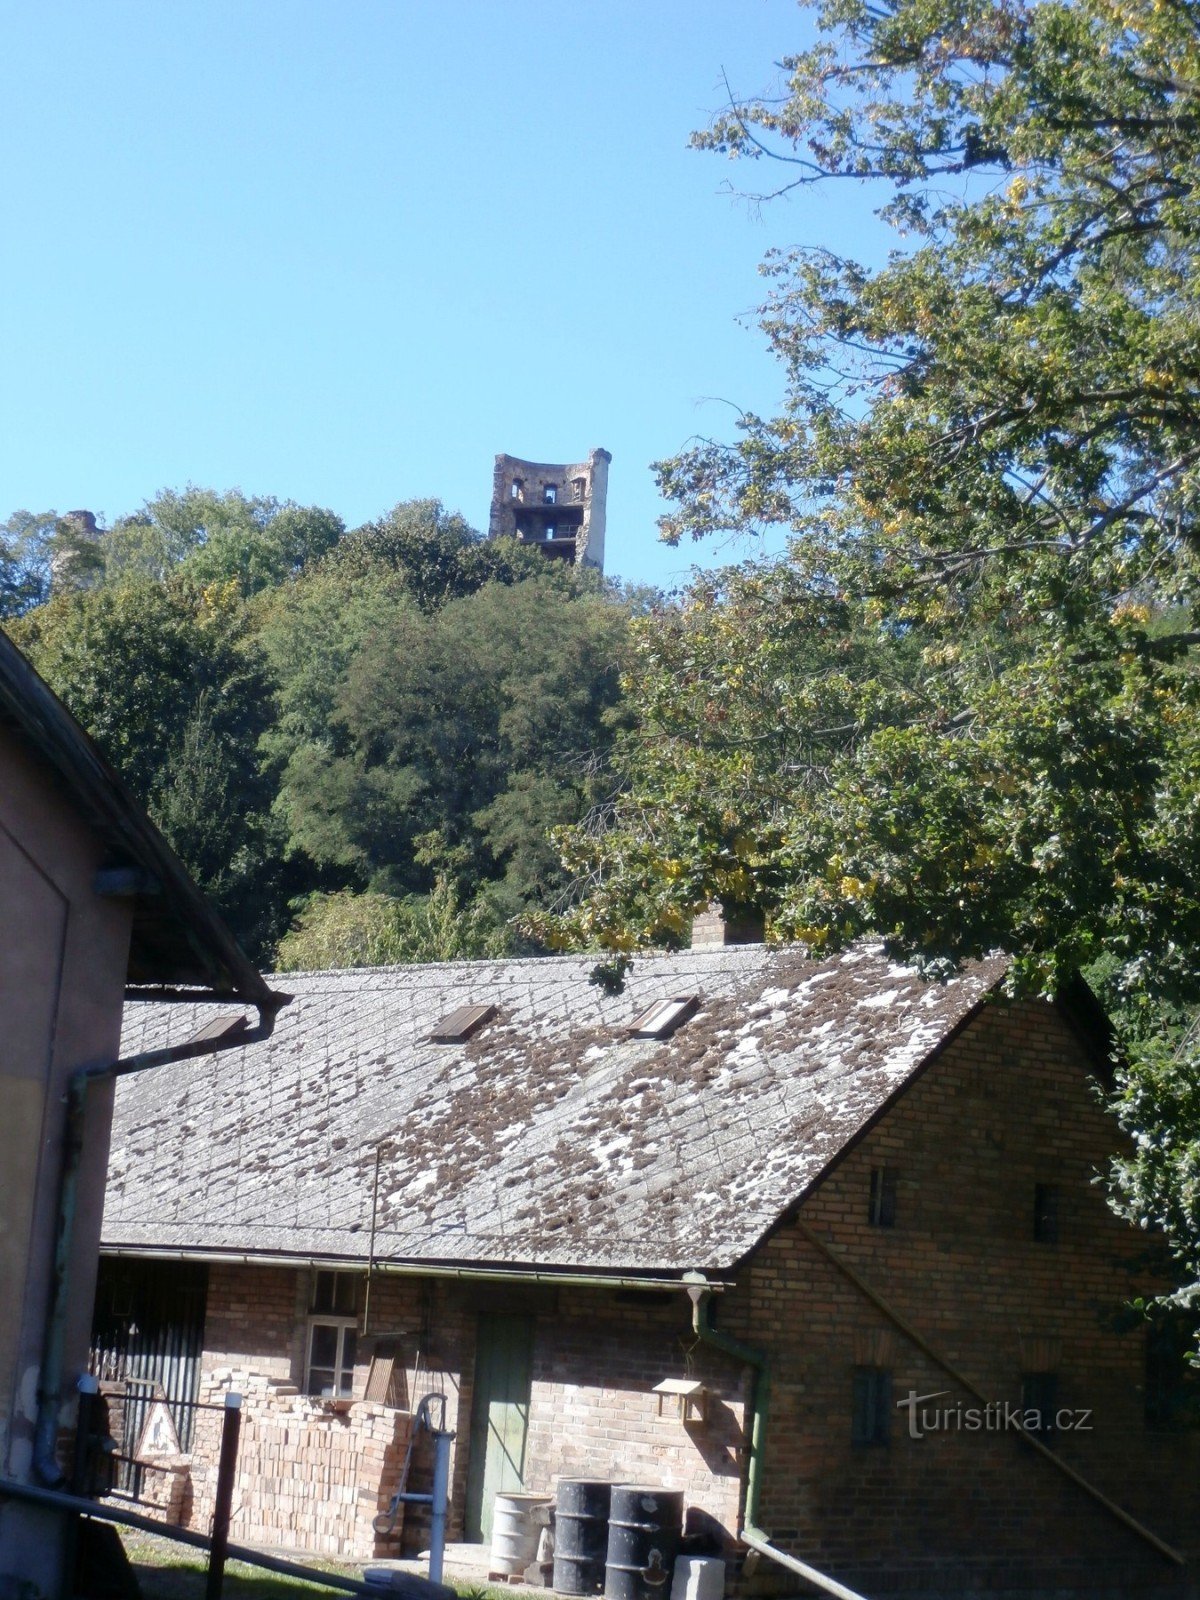 Onderweg gluurt de toren van het kasteel van Zvířetice naar ons